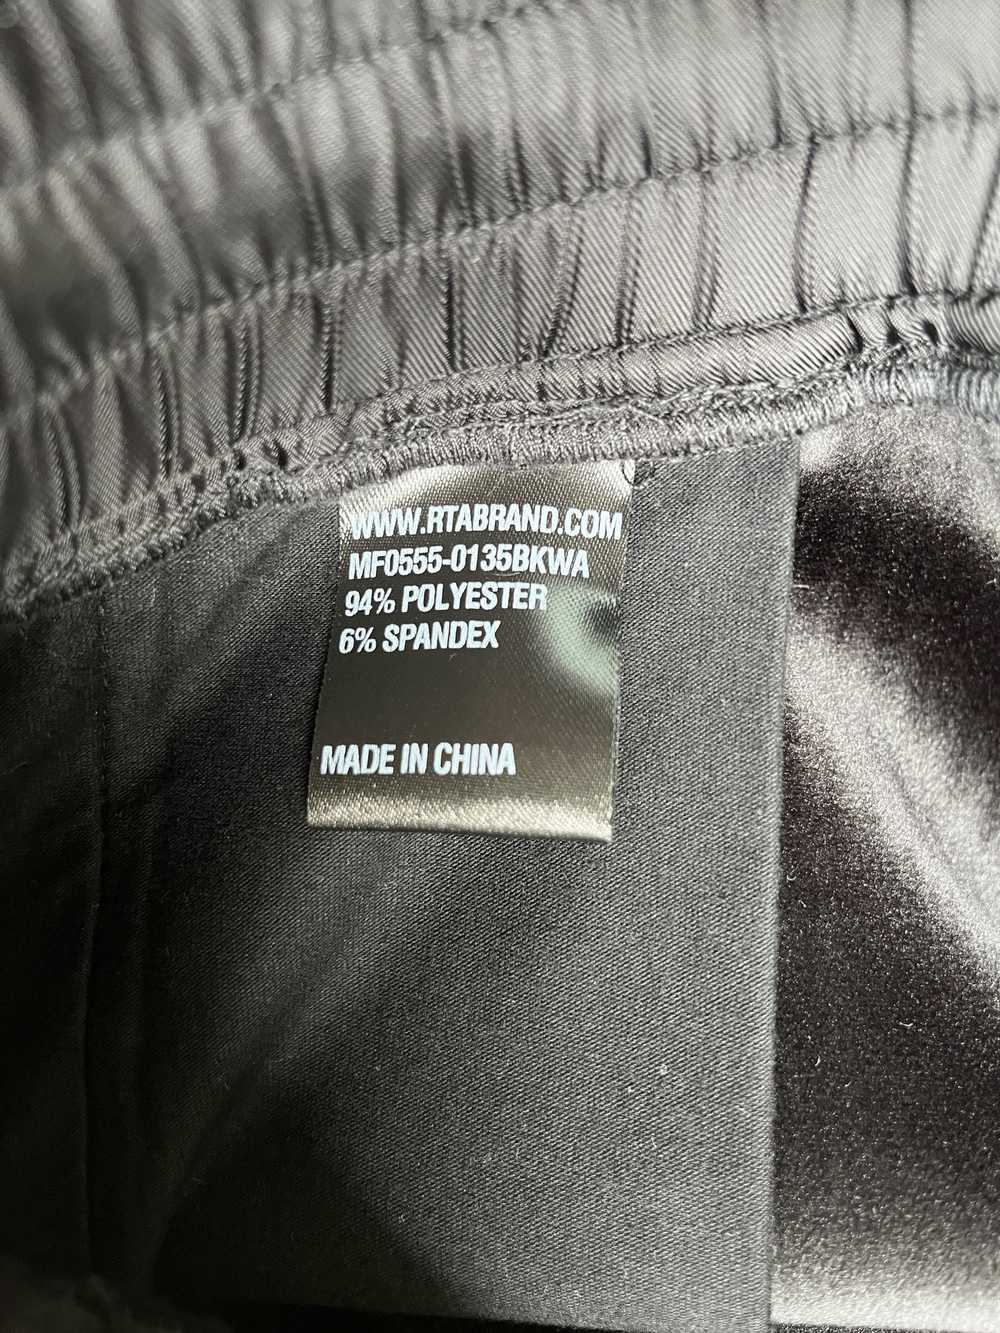 Rta RTA Velour Corduroy Pants Black Size XL - image 4